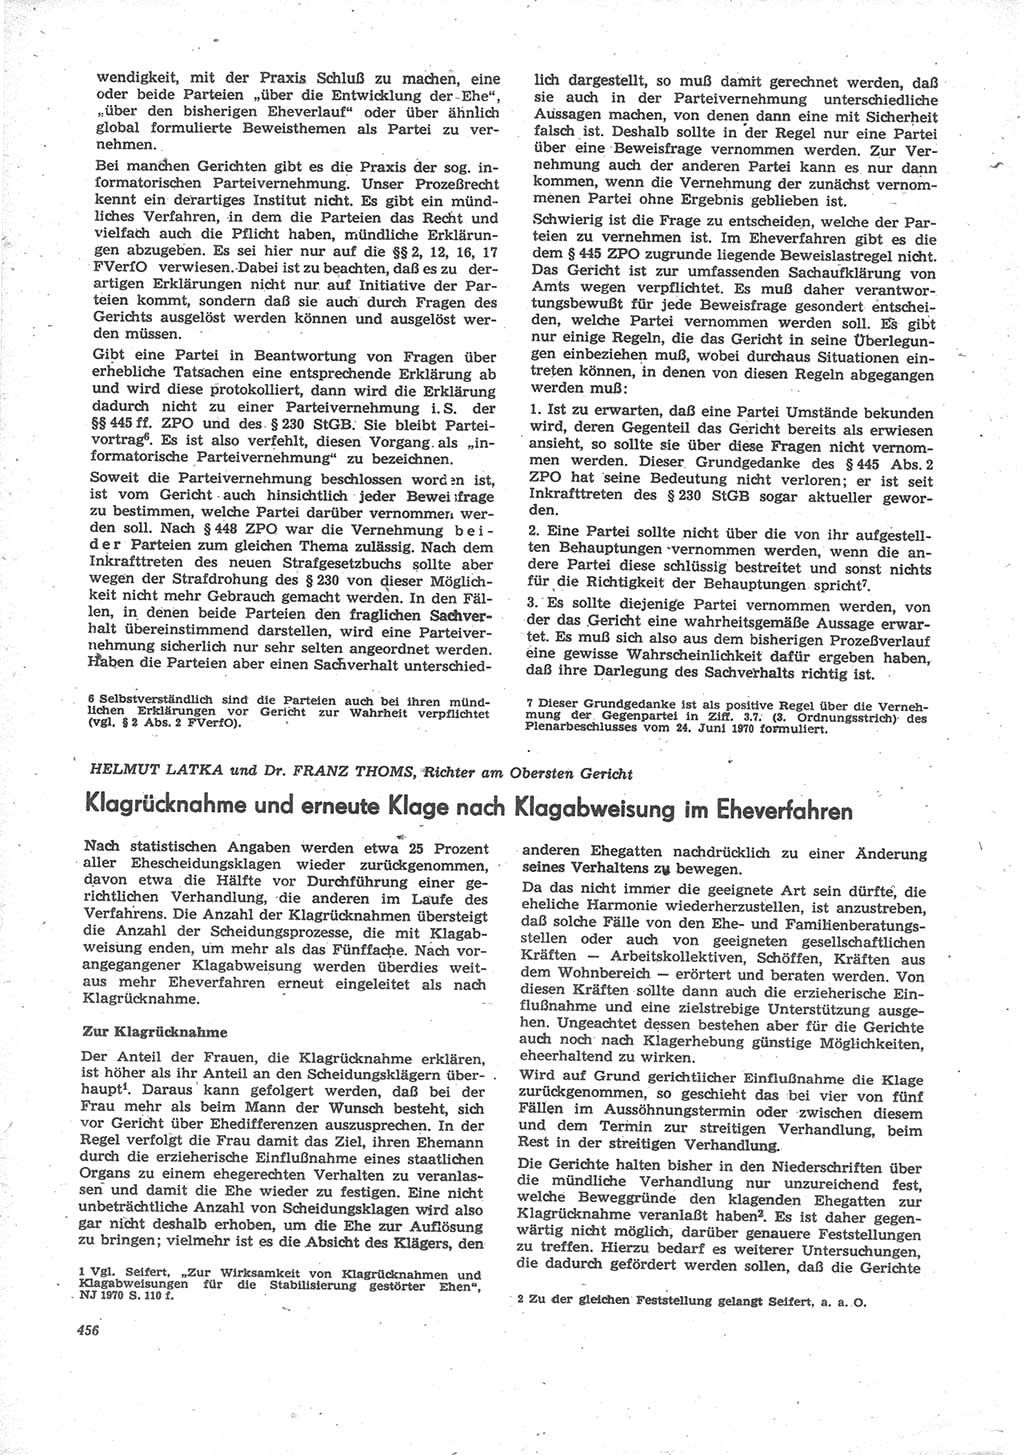 Neue Justiz (NJ), Zeitschrift für Recht und Rechtswissenschaft [Deutsche Demokratische Republik (DDR)], 24. Jahrgang 1970, Seite 456 (NJ DDR 1970, S. 456)